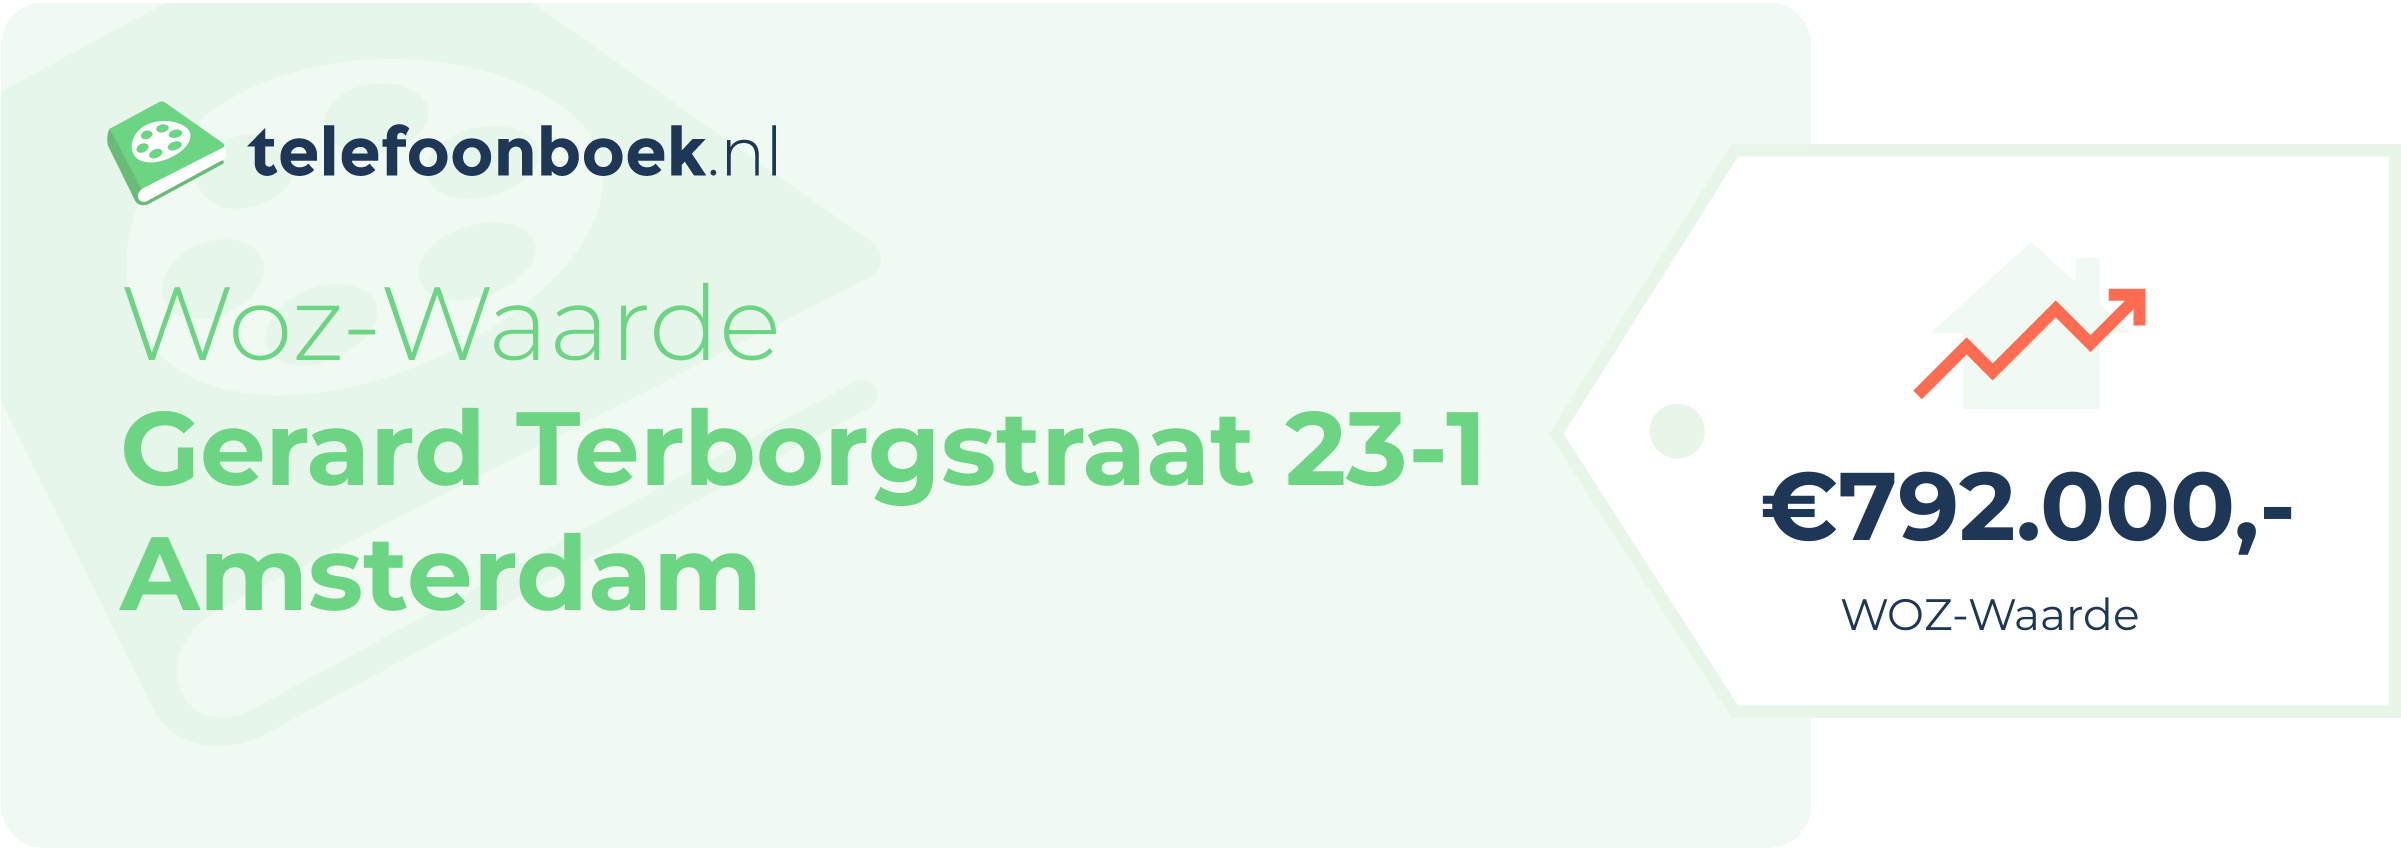 WOZ-waarde Gerard Terborgstraat 23-1 Amsterdam